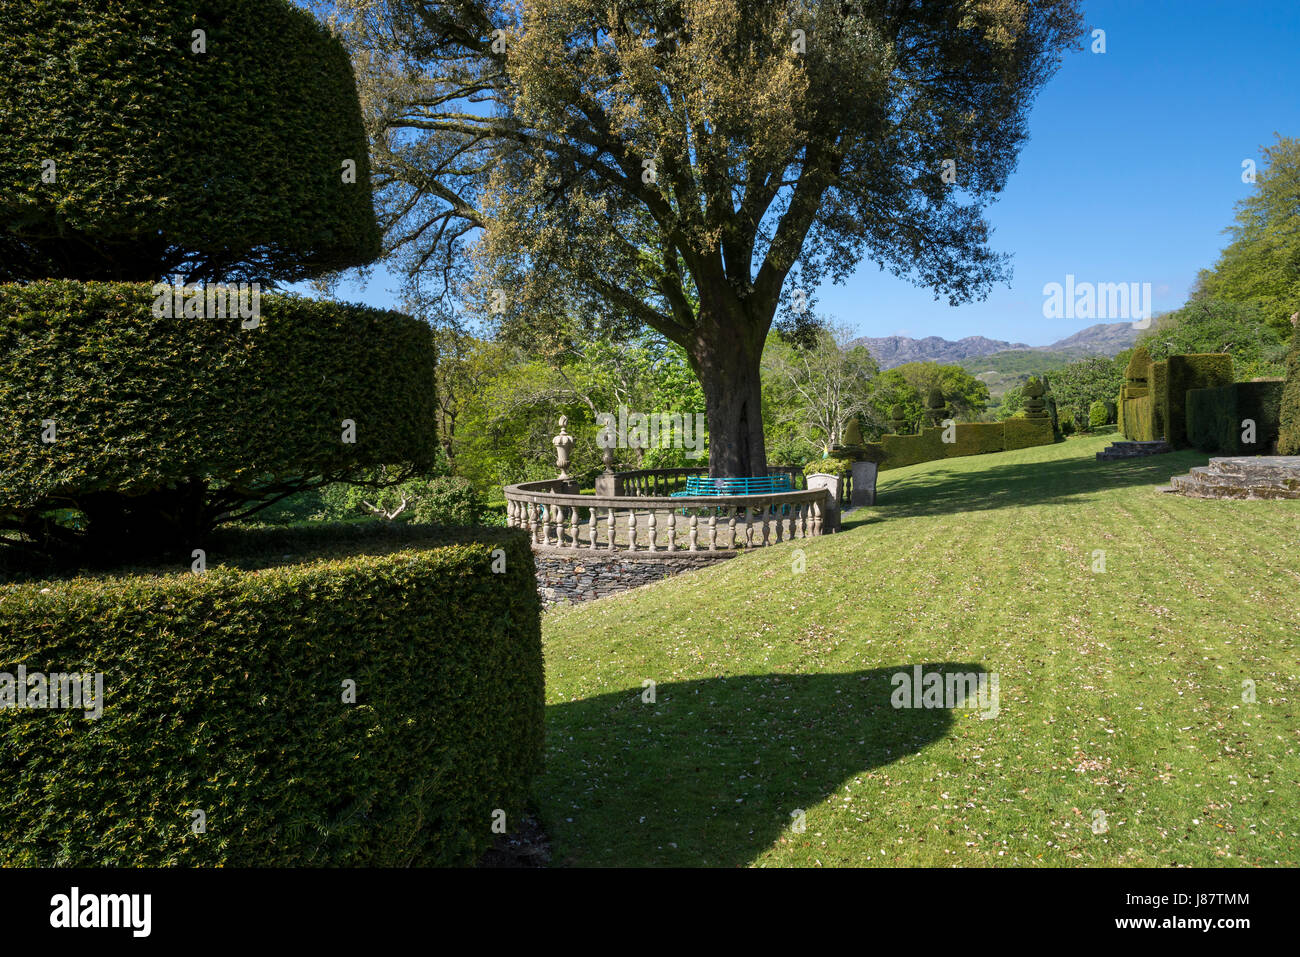 Plas Brondanw jardins près de Garreg, au nord du Pays de Galles. Un magnifique jardin créé par Clough Williams-Ellis. Banque D'Images